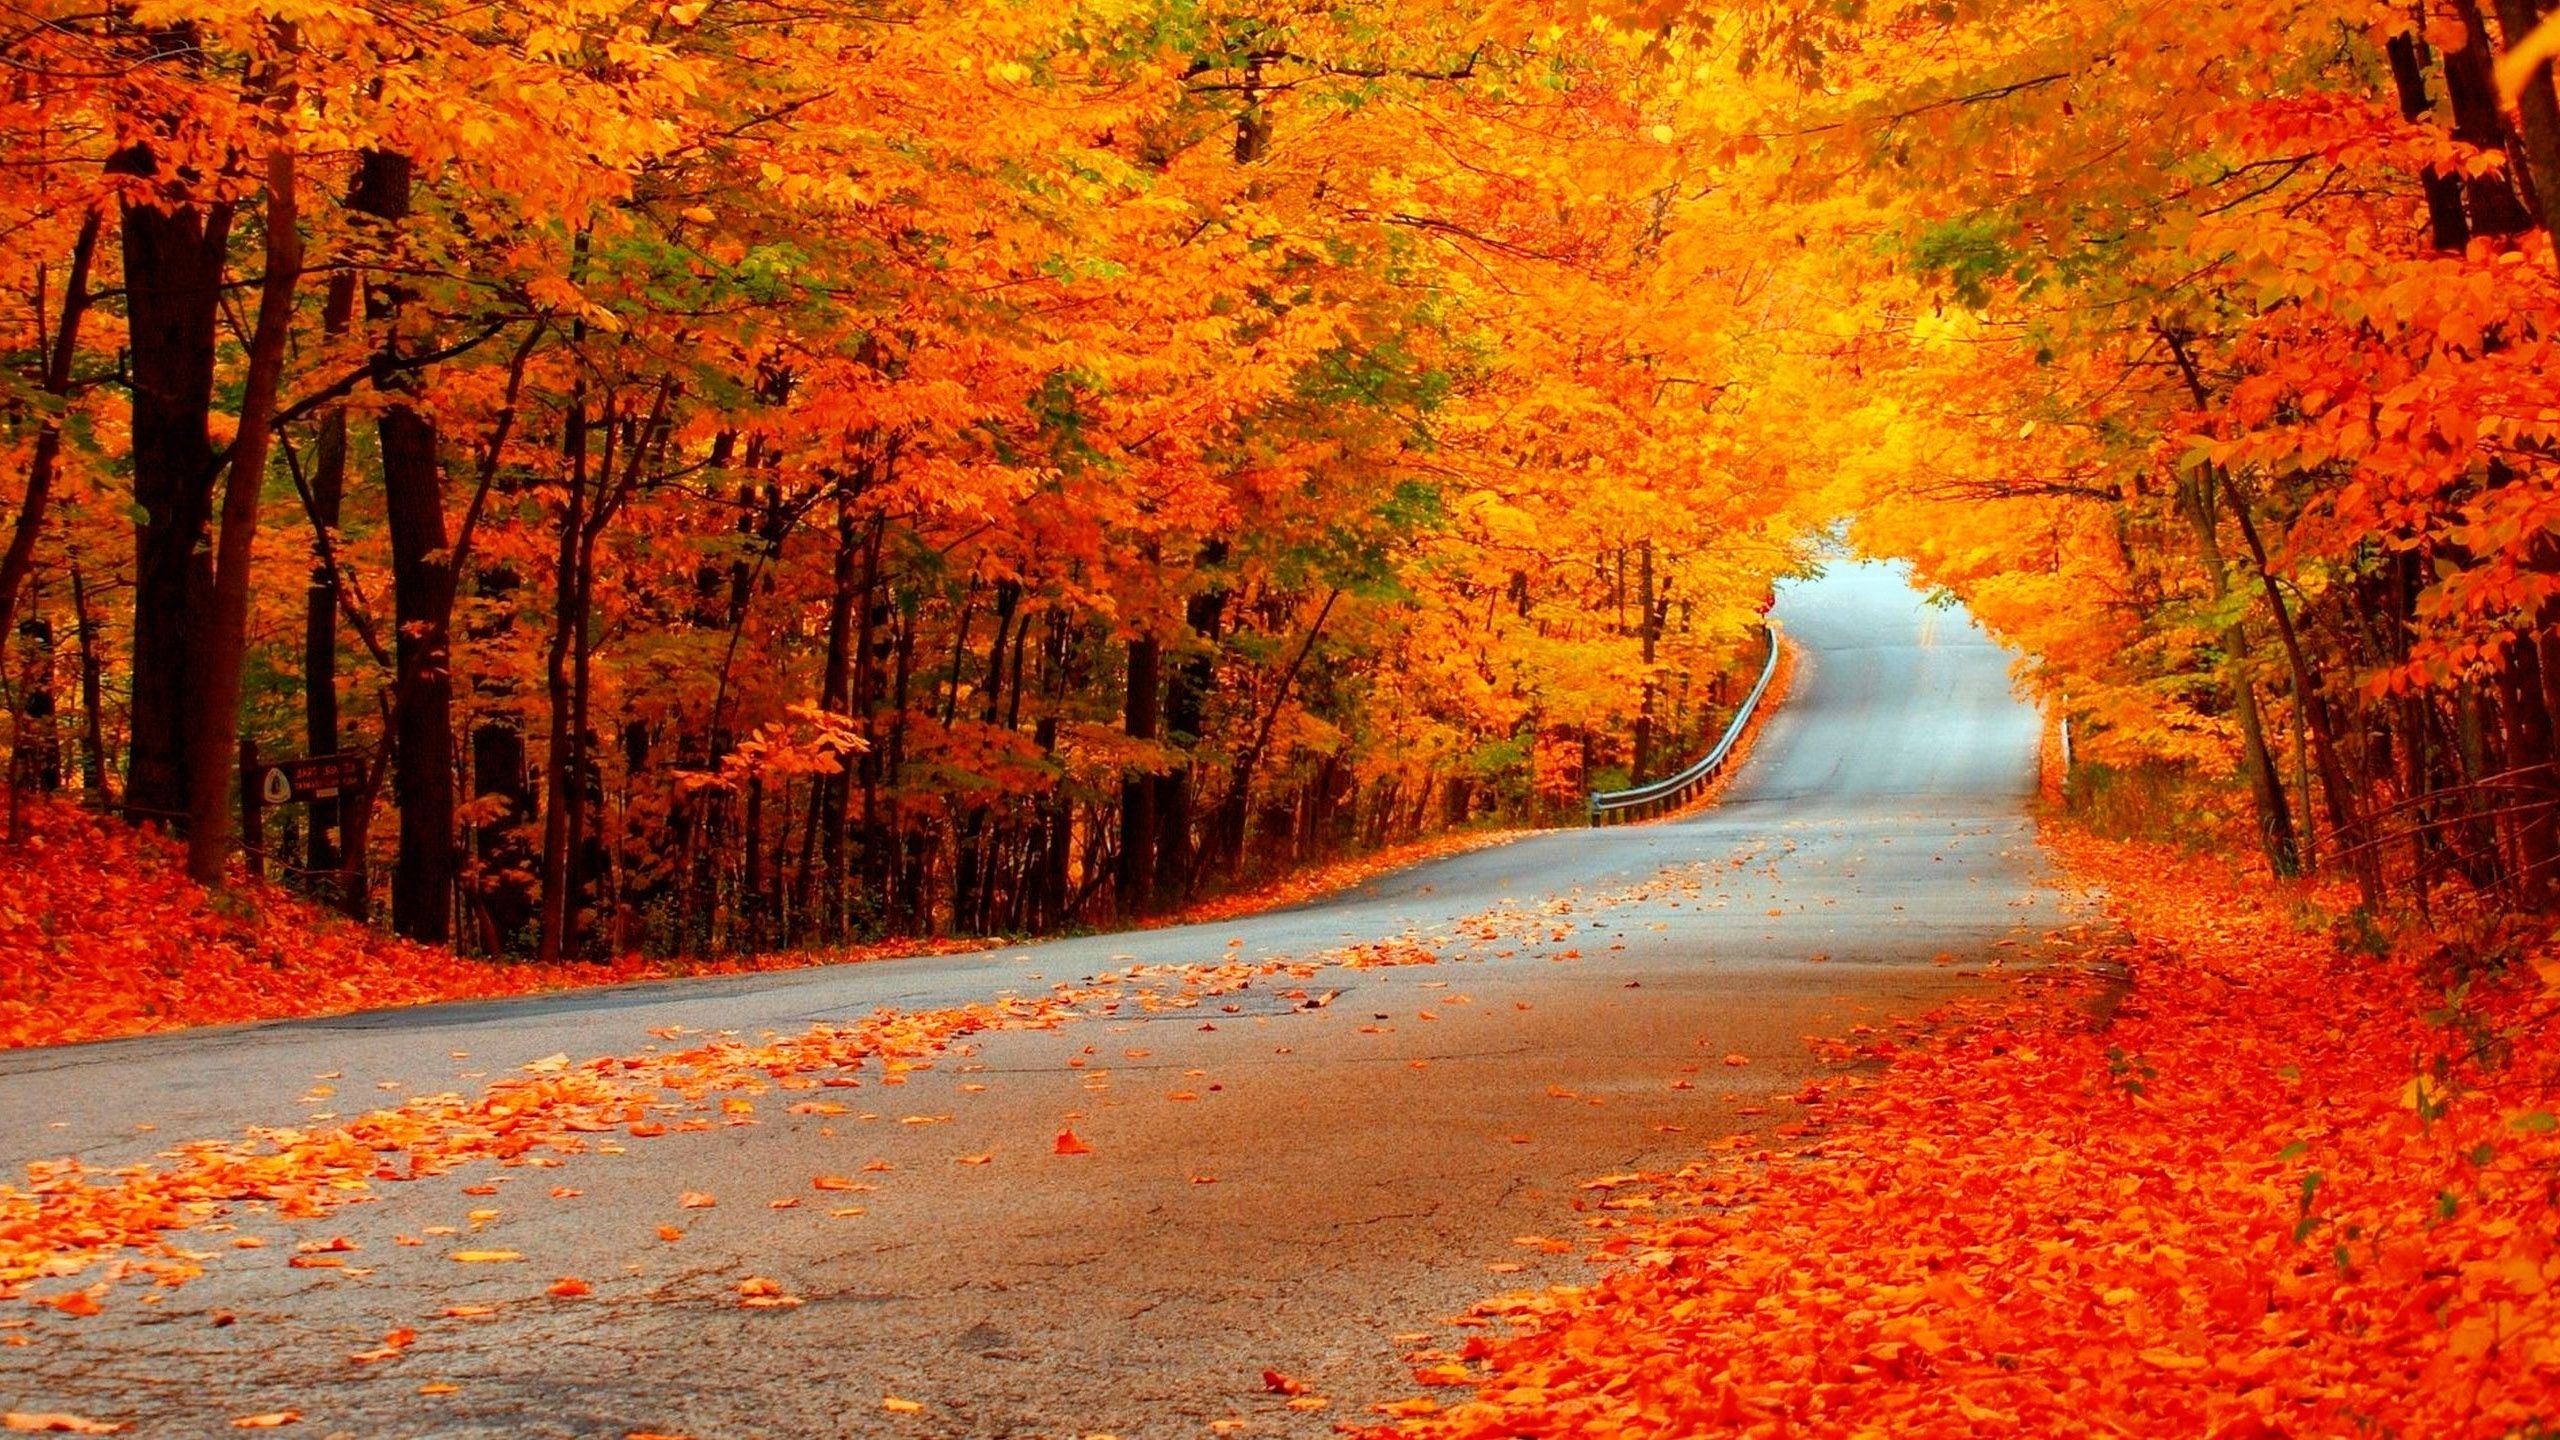 عکس جاده پاییزی زیبا و رویایی در فصل زرد رنگ